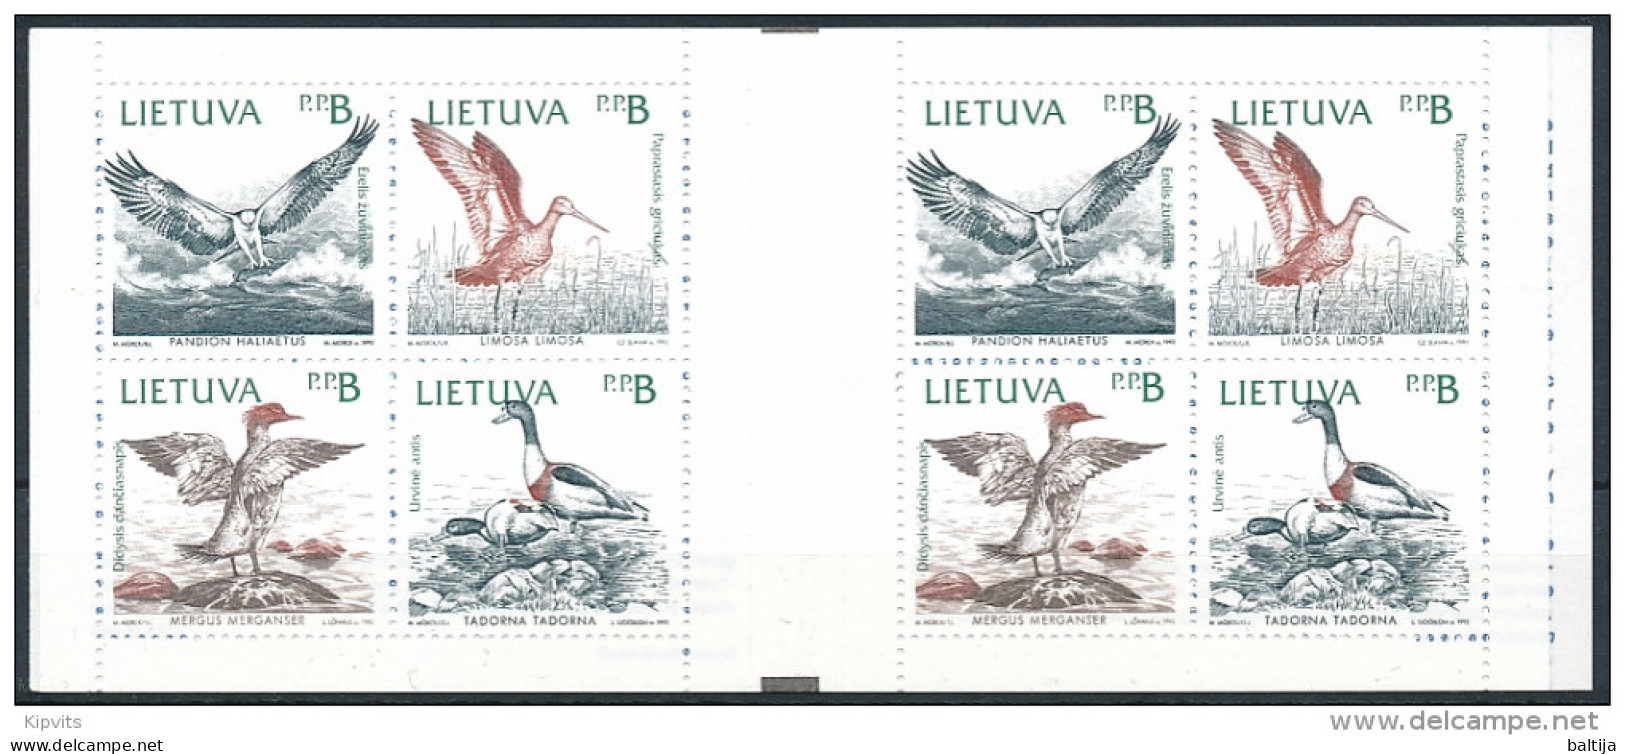 Mi MH 1 Booklet ** MNH / Birds, Osprey, Black-tailed Godwit, Merganser, Shelduck, Slania, Joint Issue - Lithuania